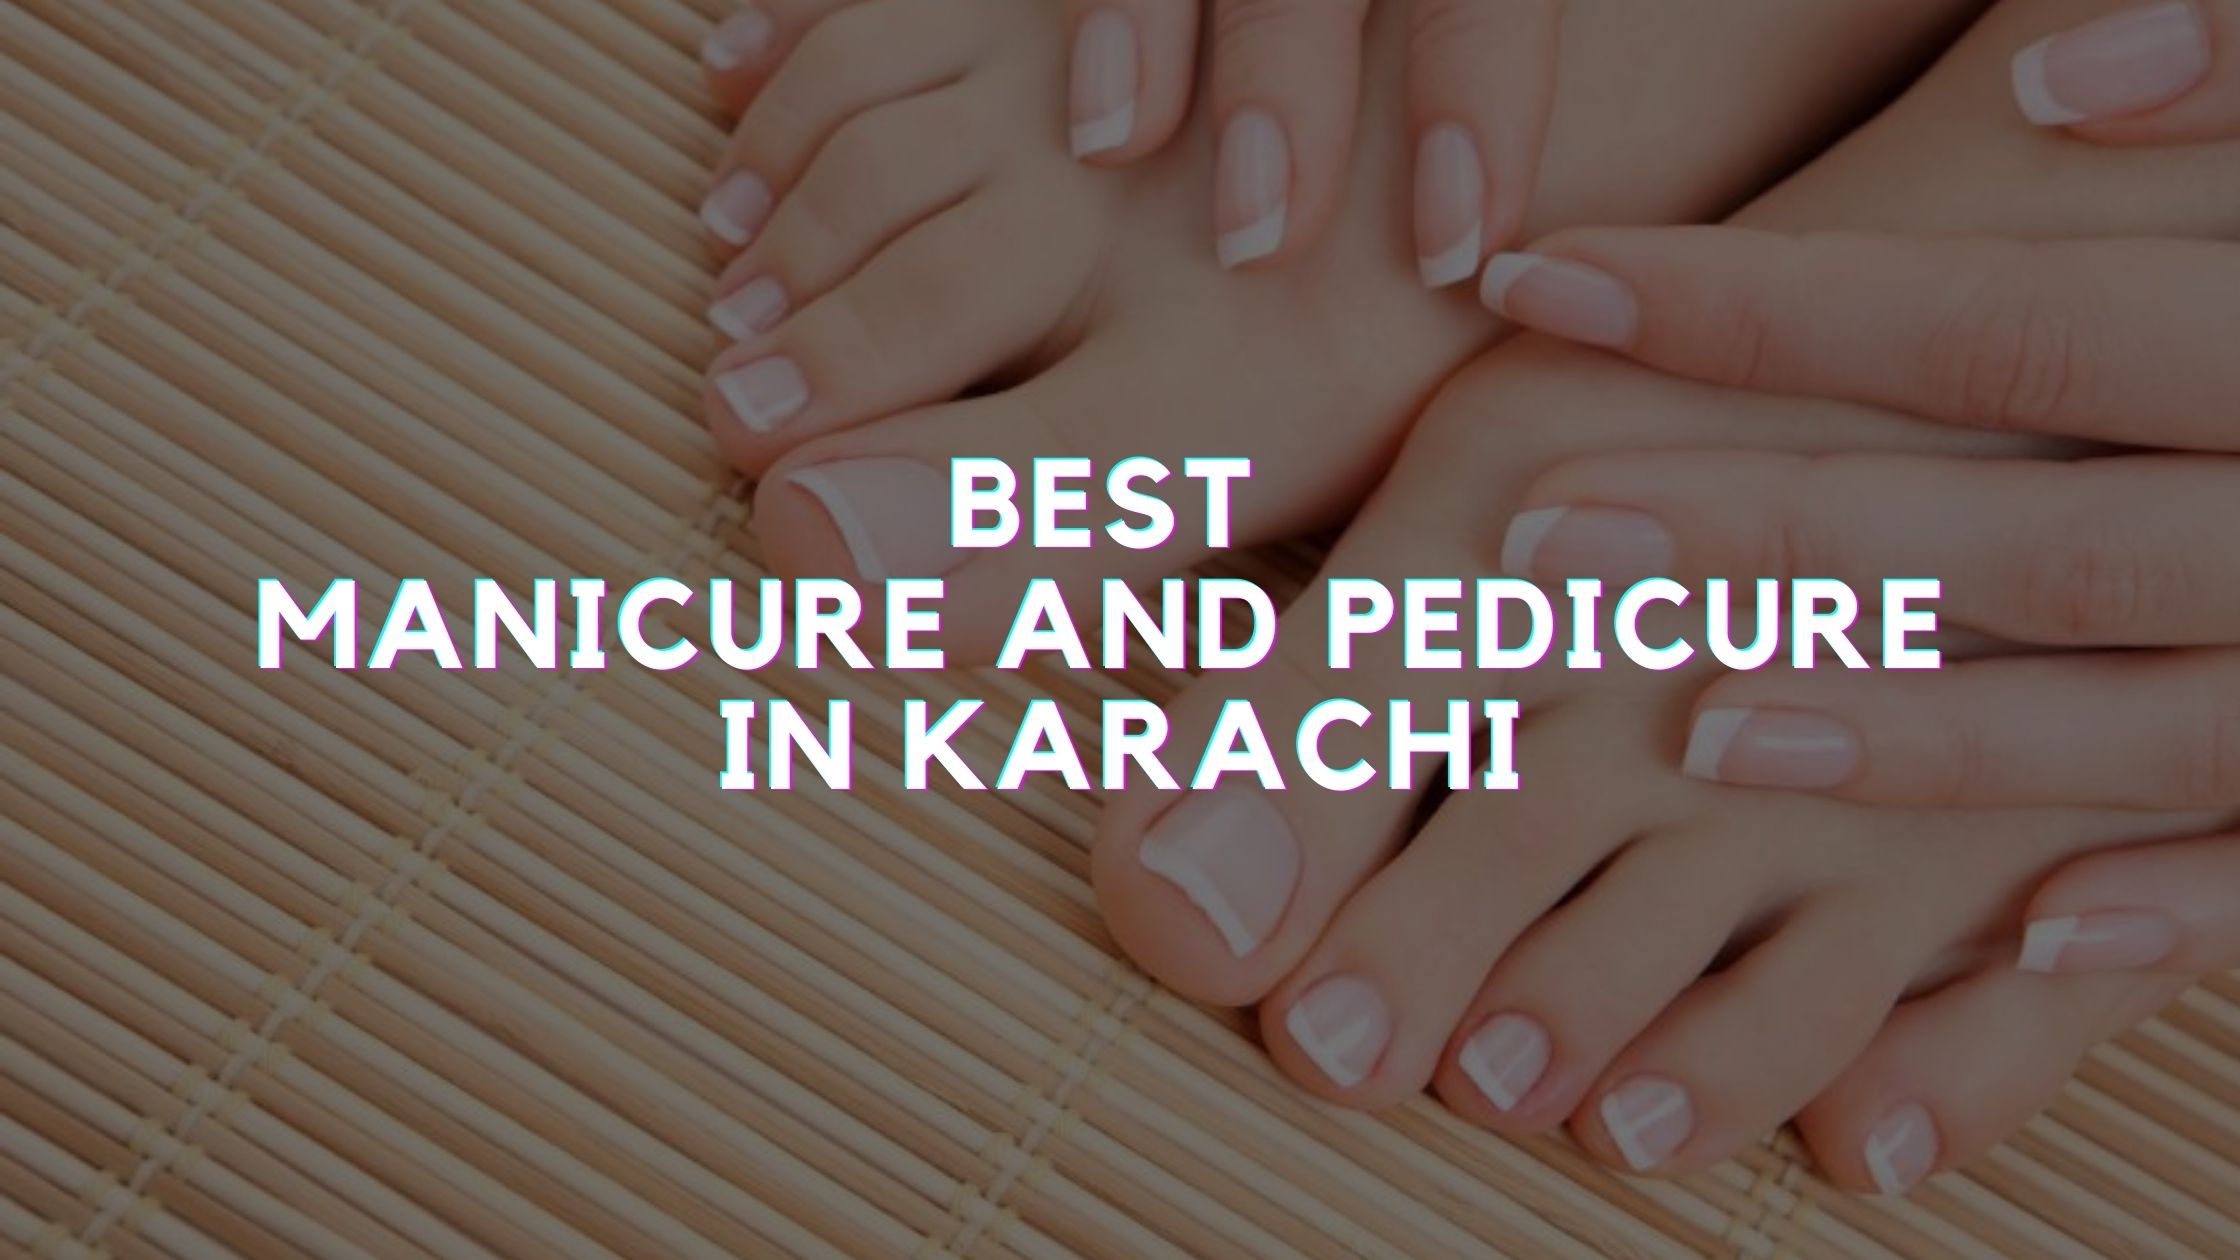 Best Manicure and Pedicure in Karachi